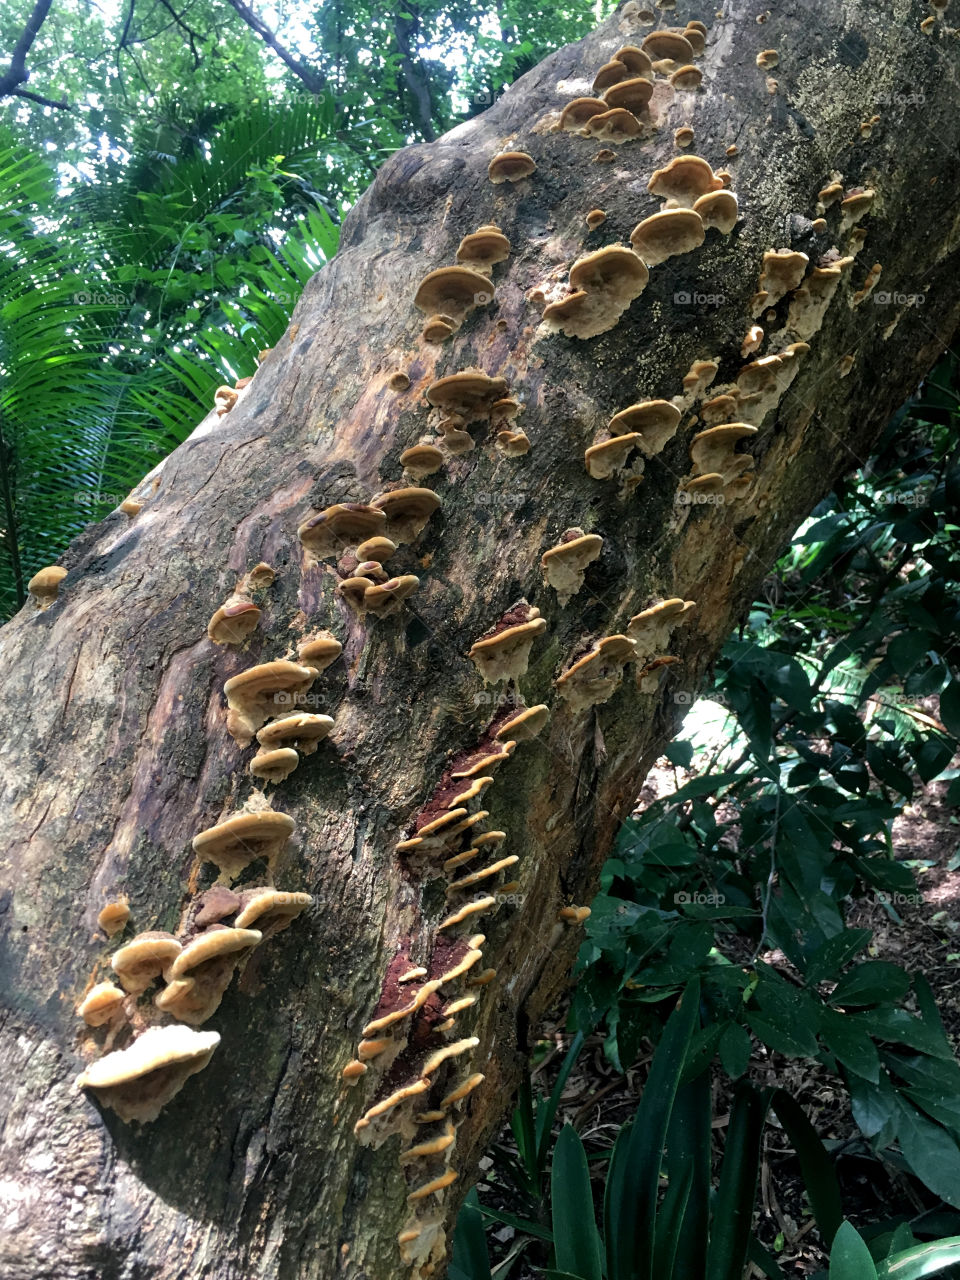 Mushroom on tree trunk